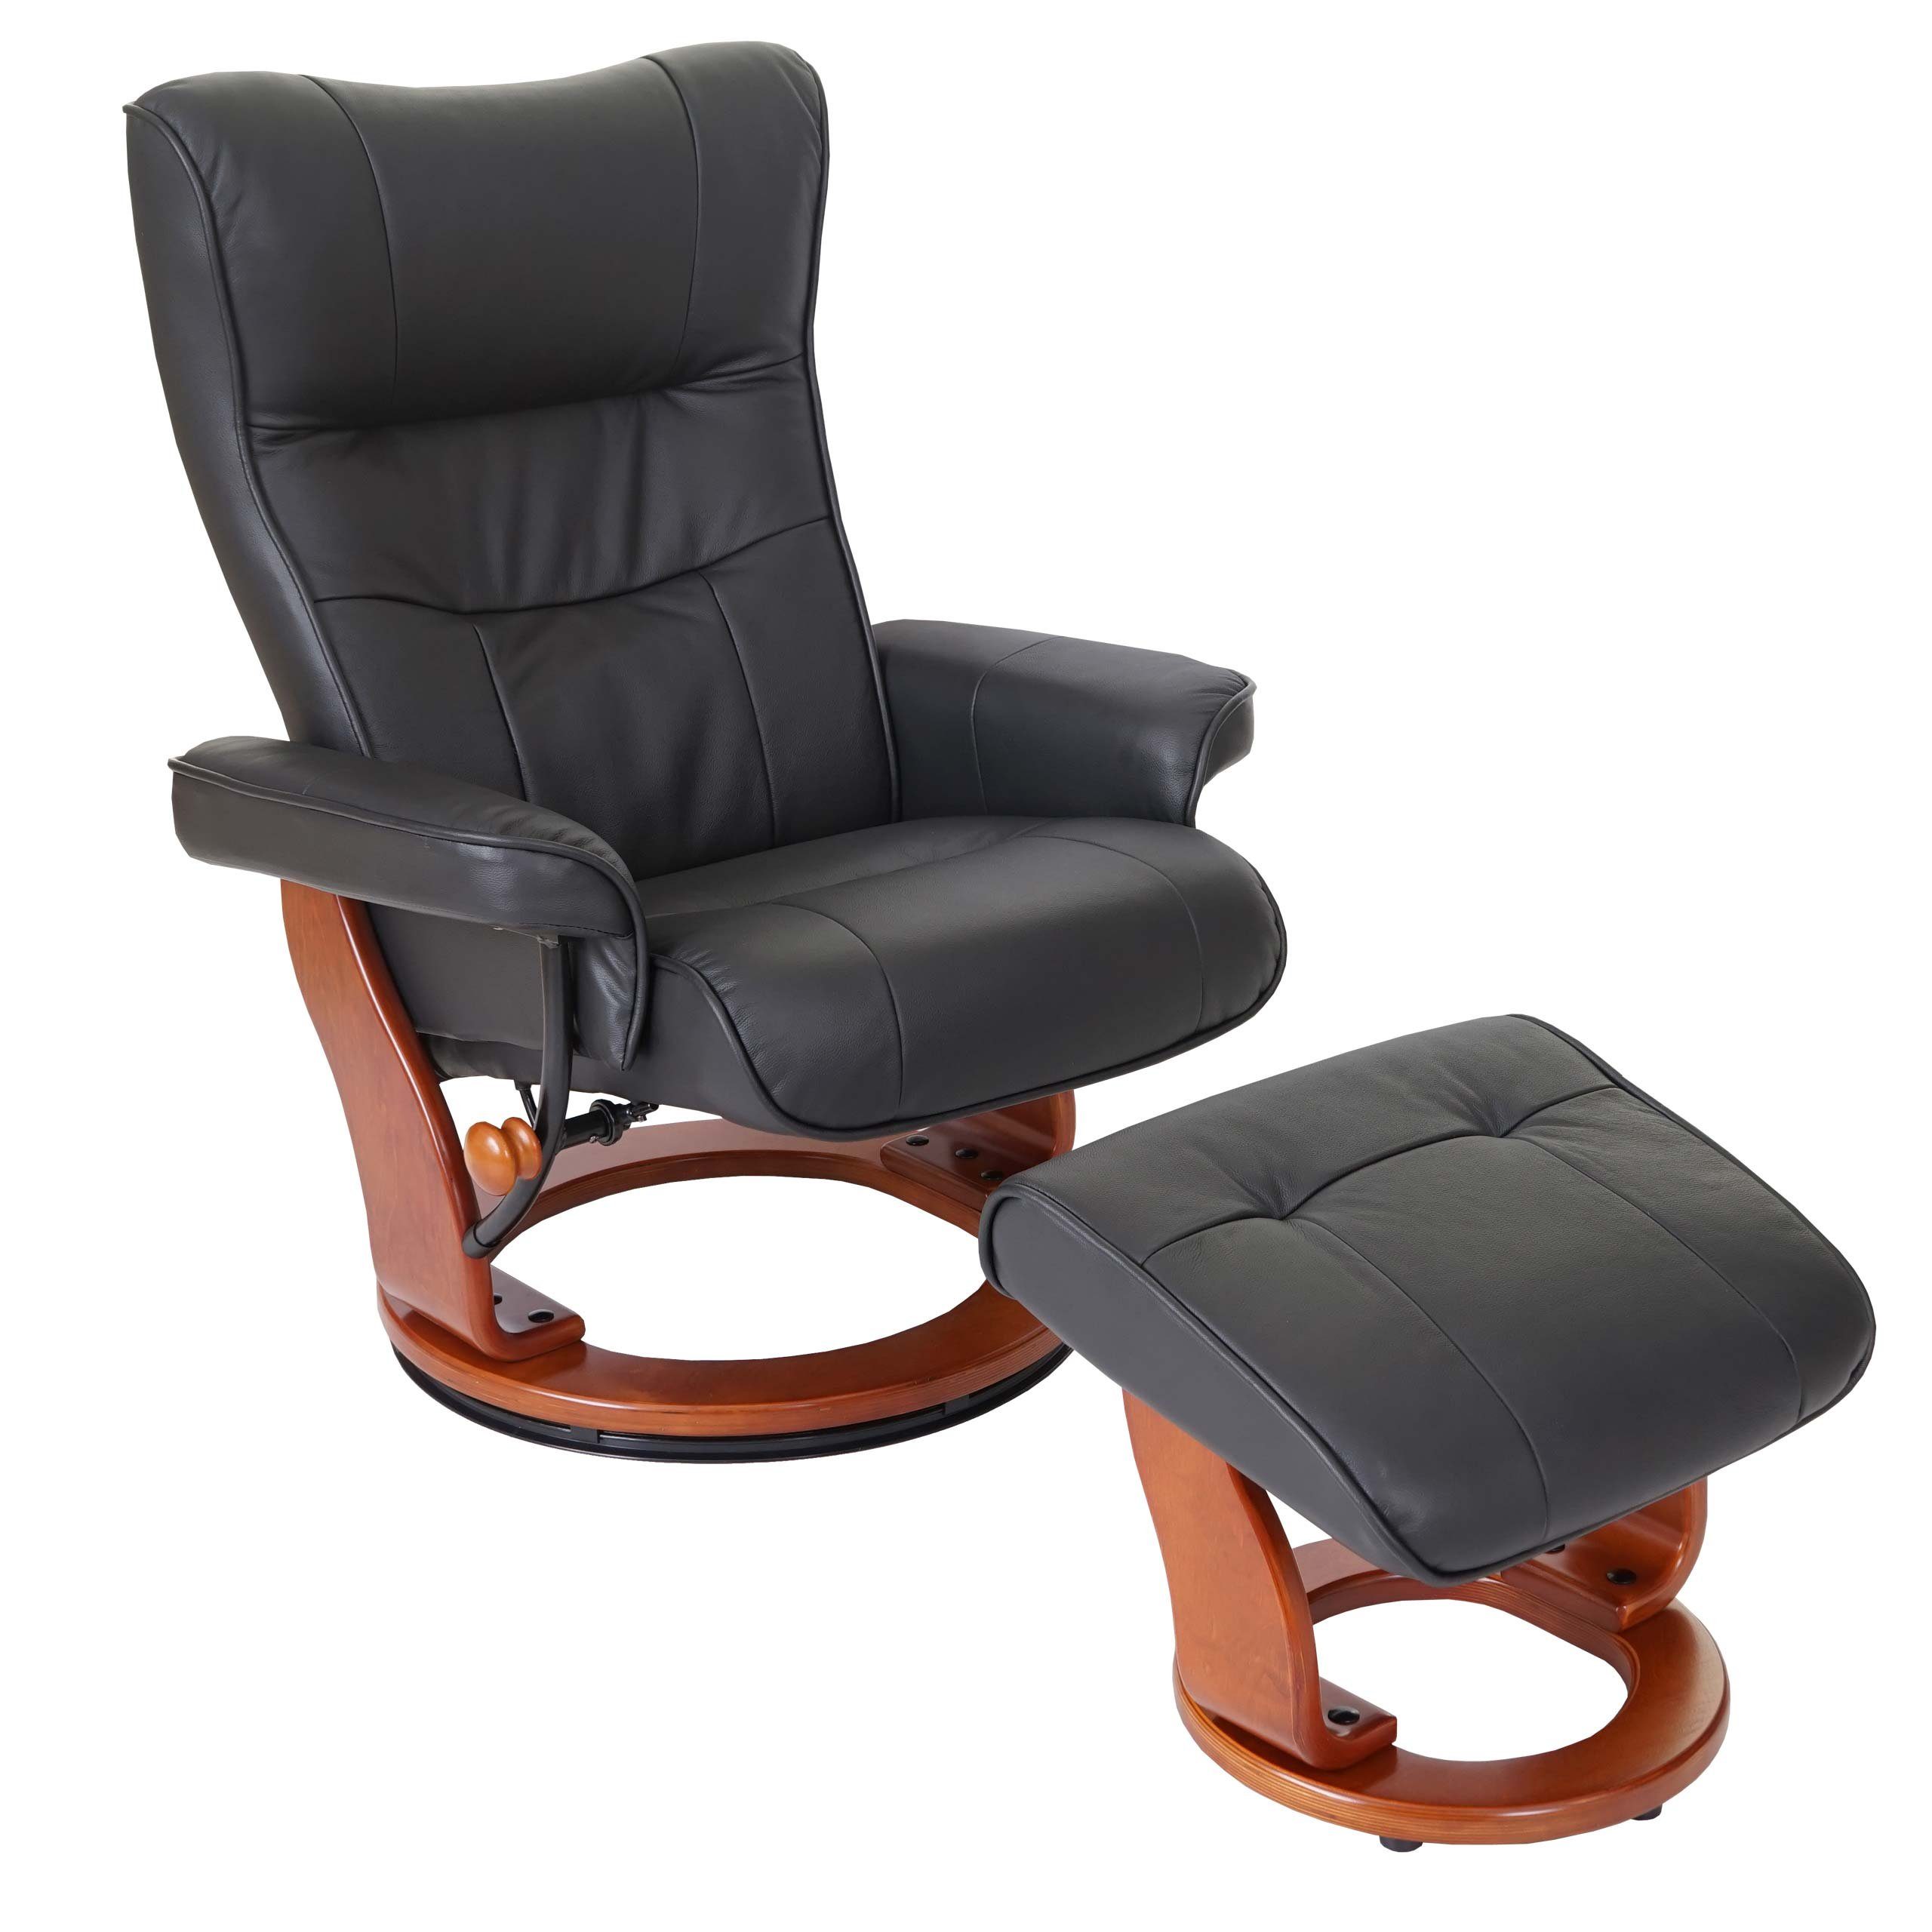 MCA furniture Relaxsessel Edmonton, Dicke Polsterung, Inkl. gepolstertem Fußhocker, Markenware von MCA schwarz, honigfarben